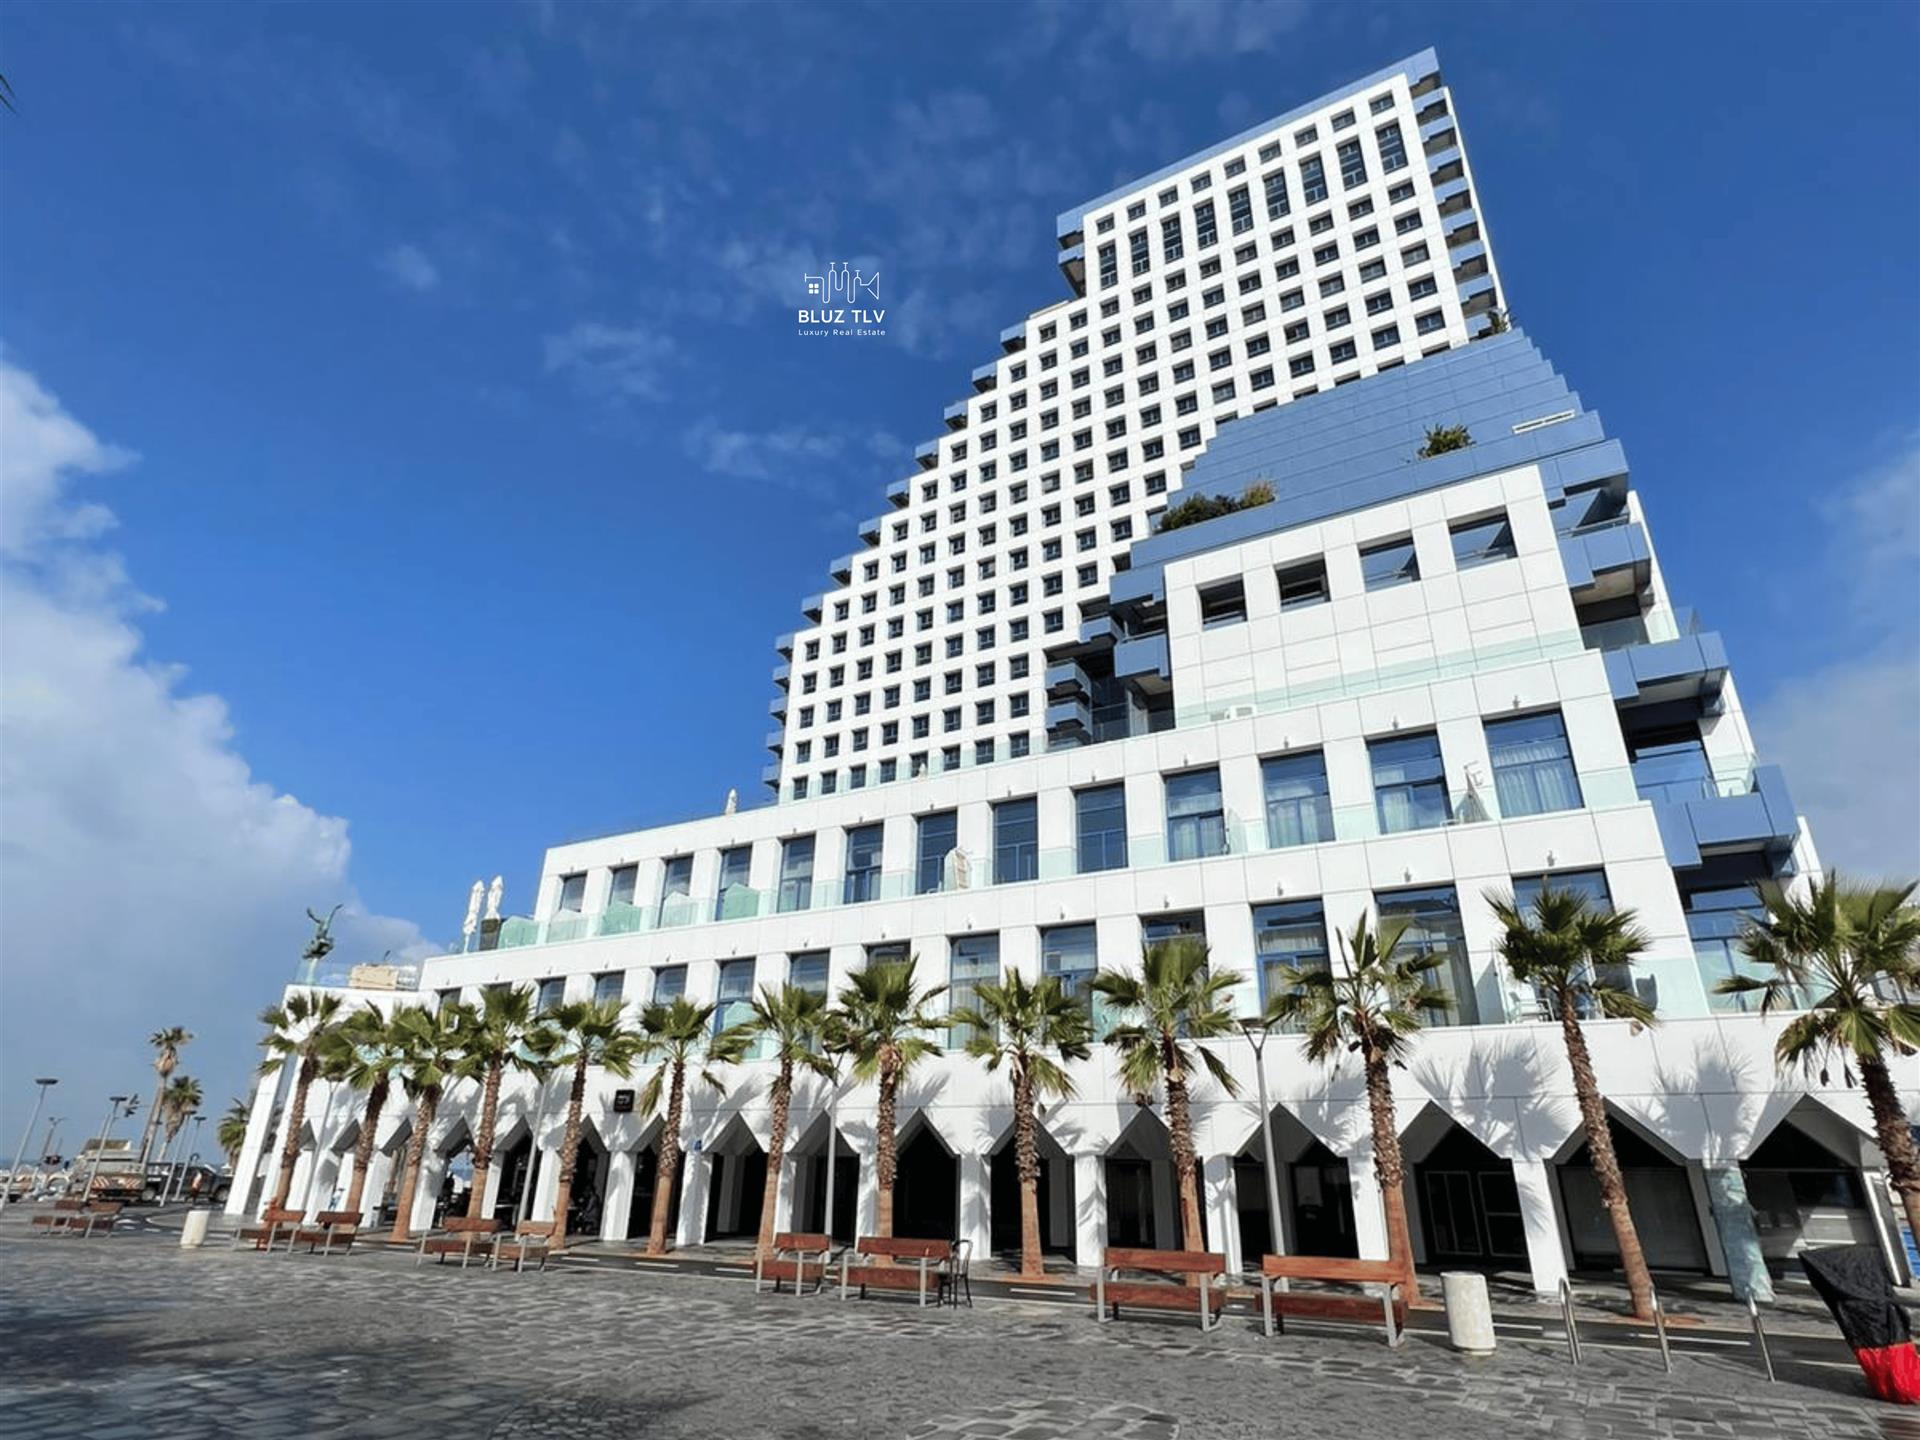 Appartement de luxe de 4 pièces sur la plage dans l'emblématique tour de l'opéra de Tel Aviv